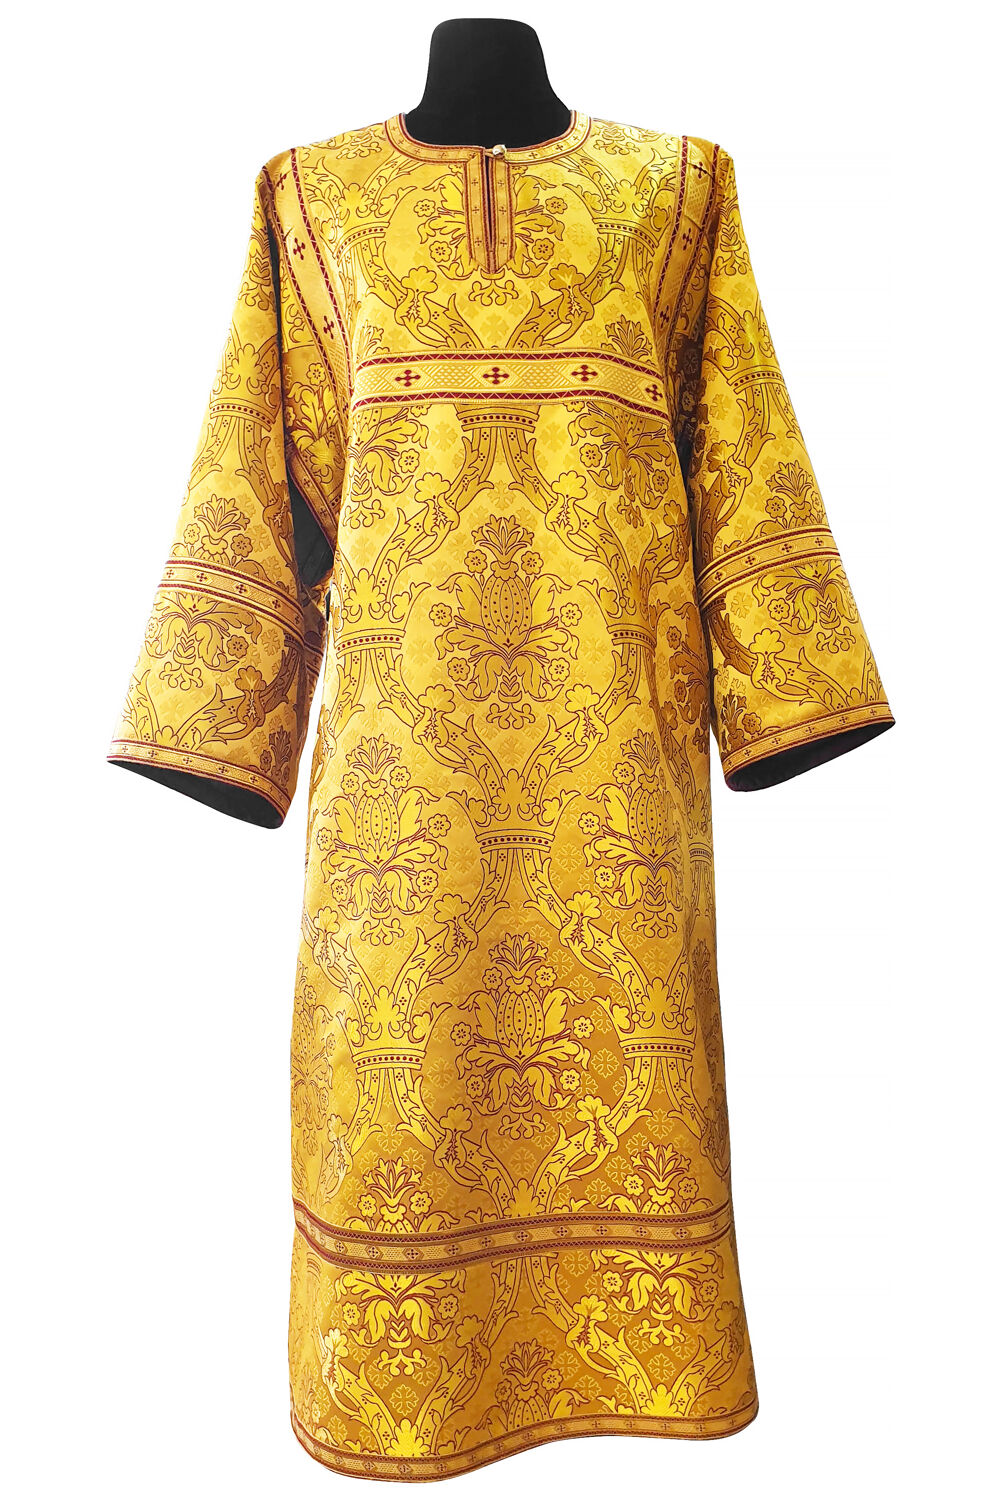 Altar Server Robe golden